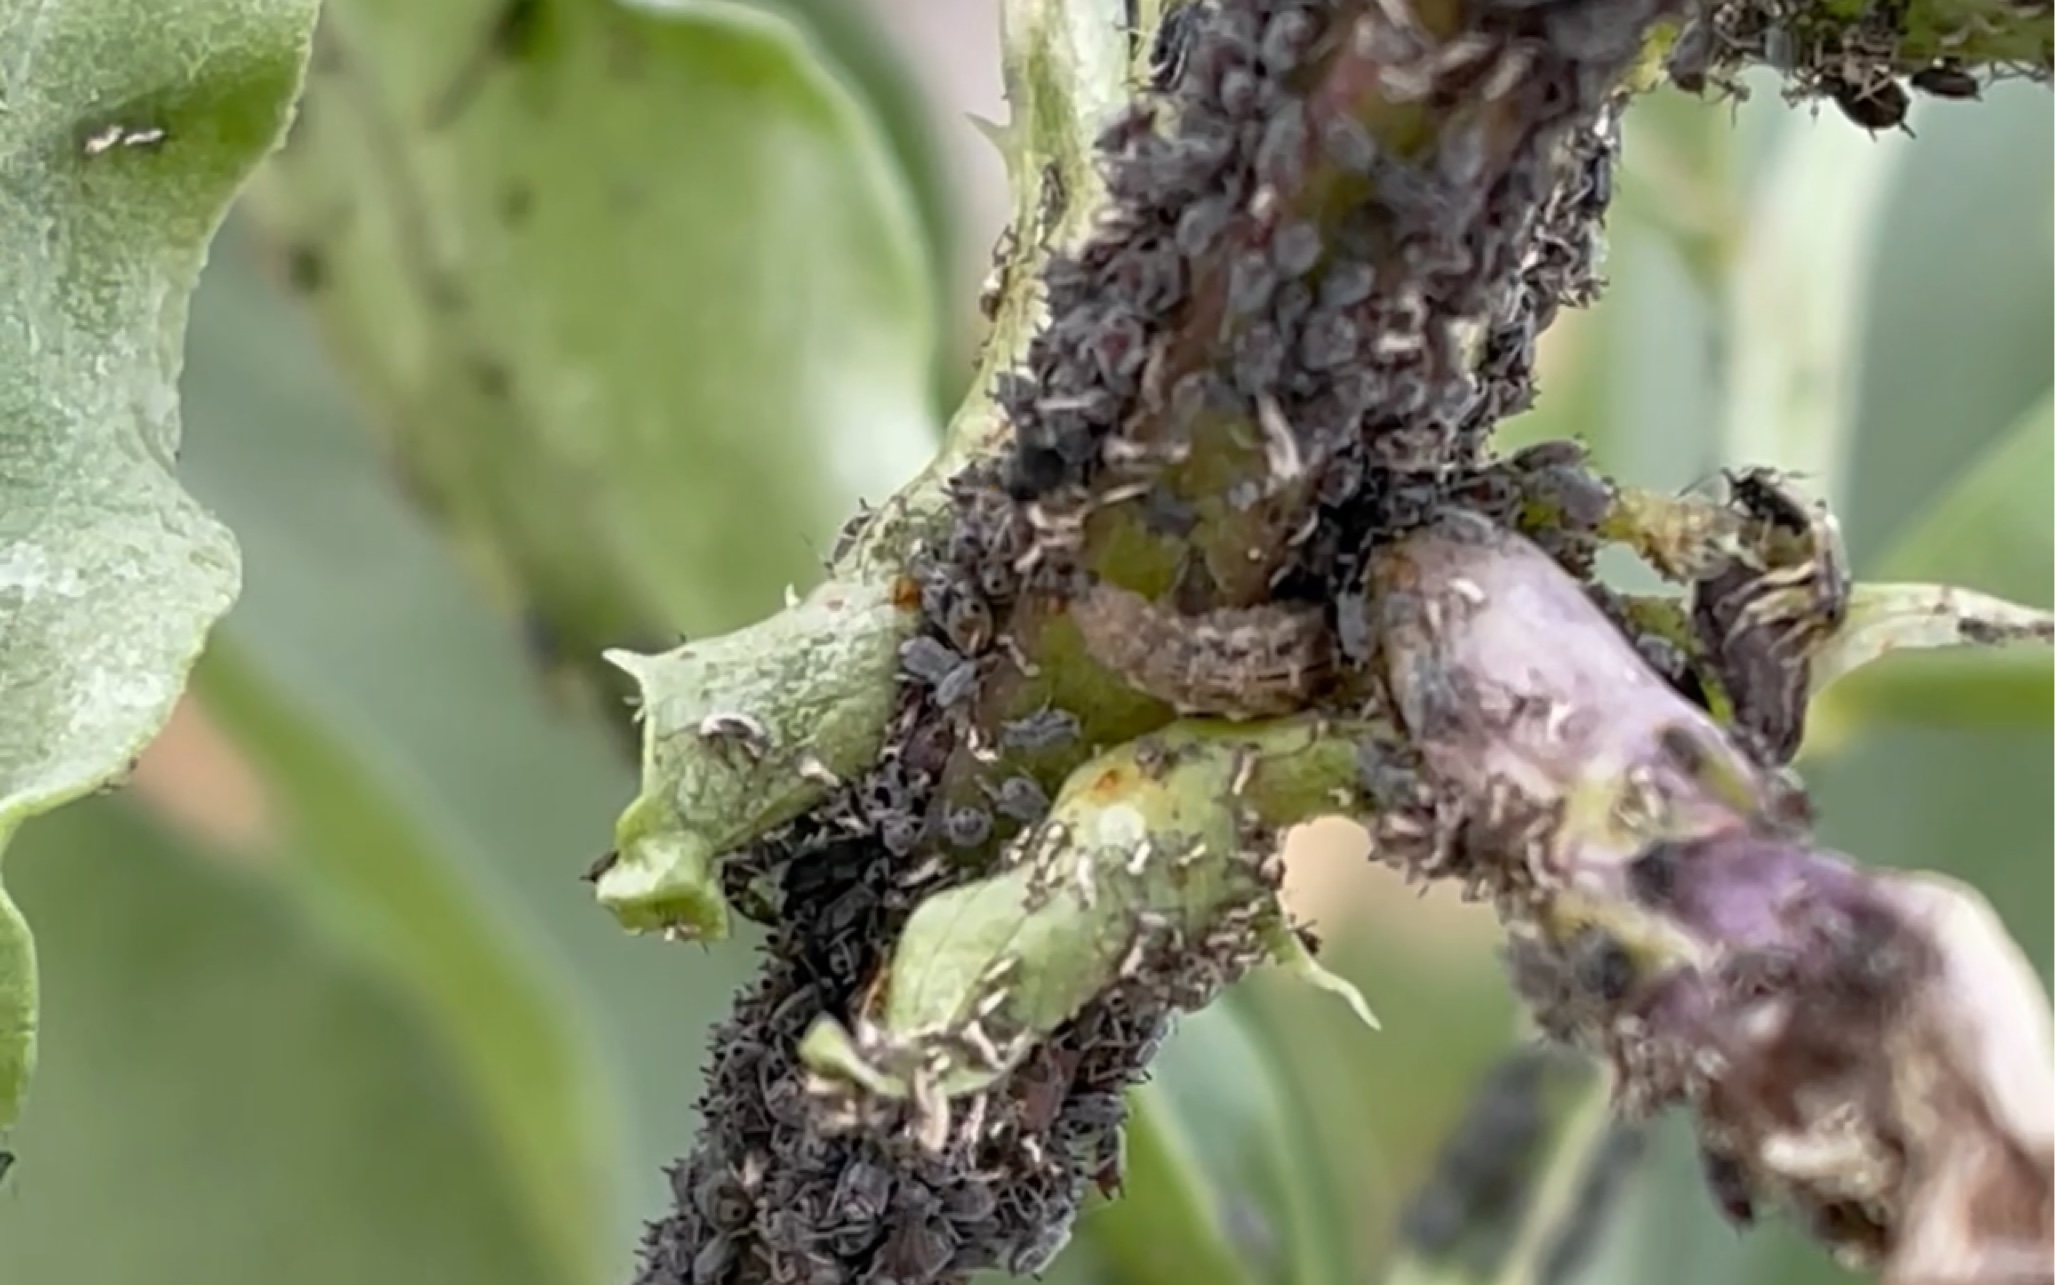 食蚜斑腹蝇图片